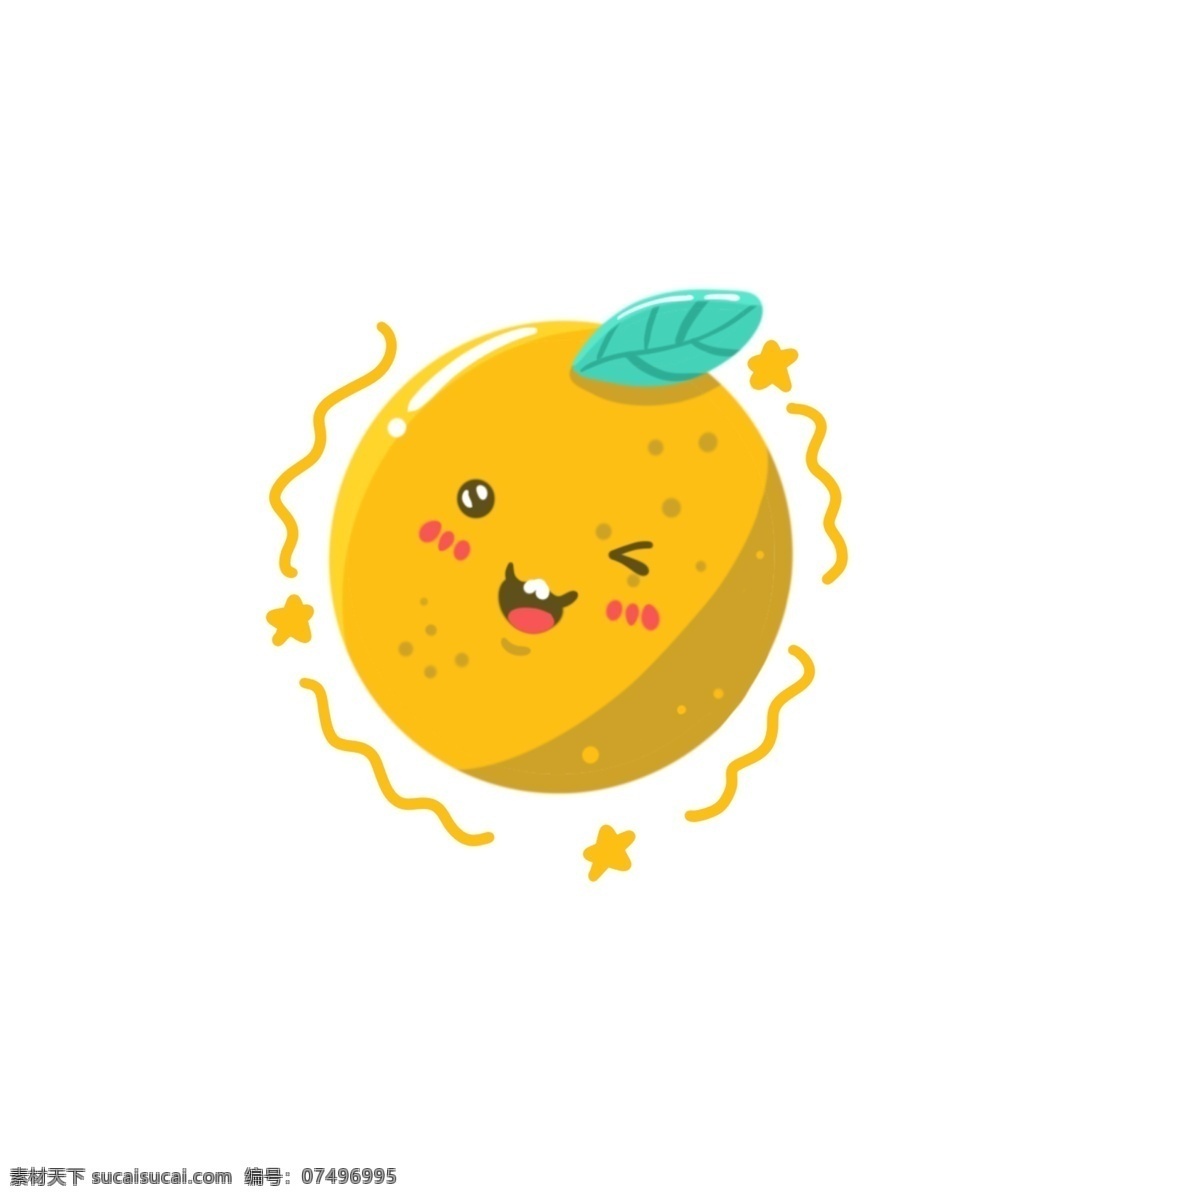 笑脸 卡通 橘子 形象 简约 水果 可爱